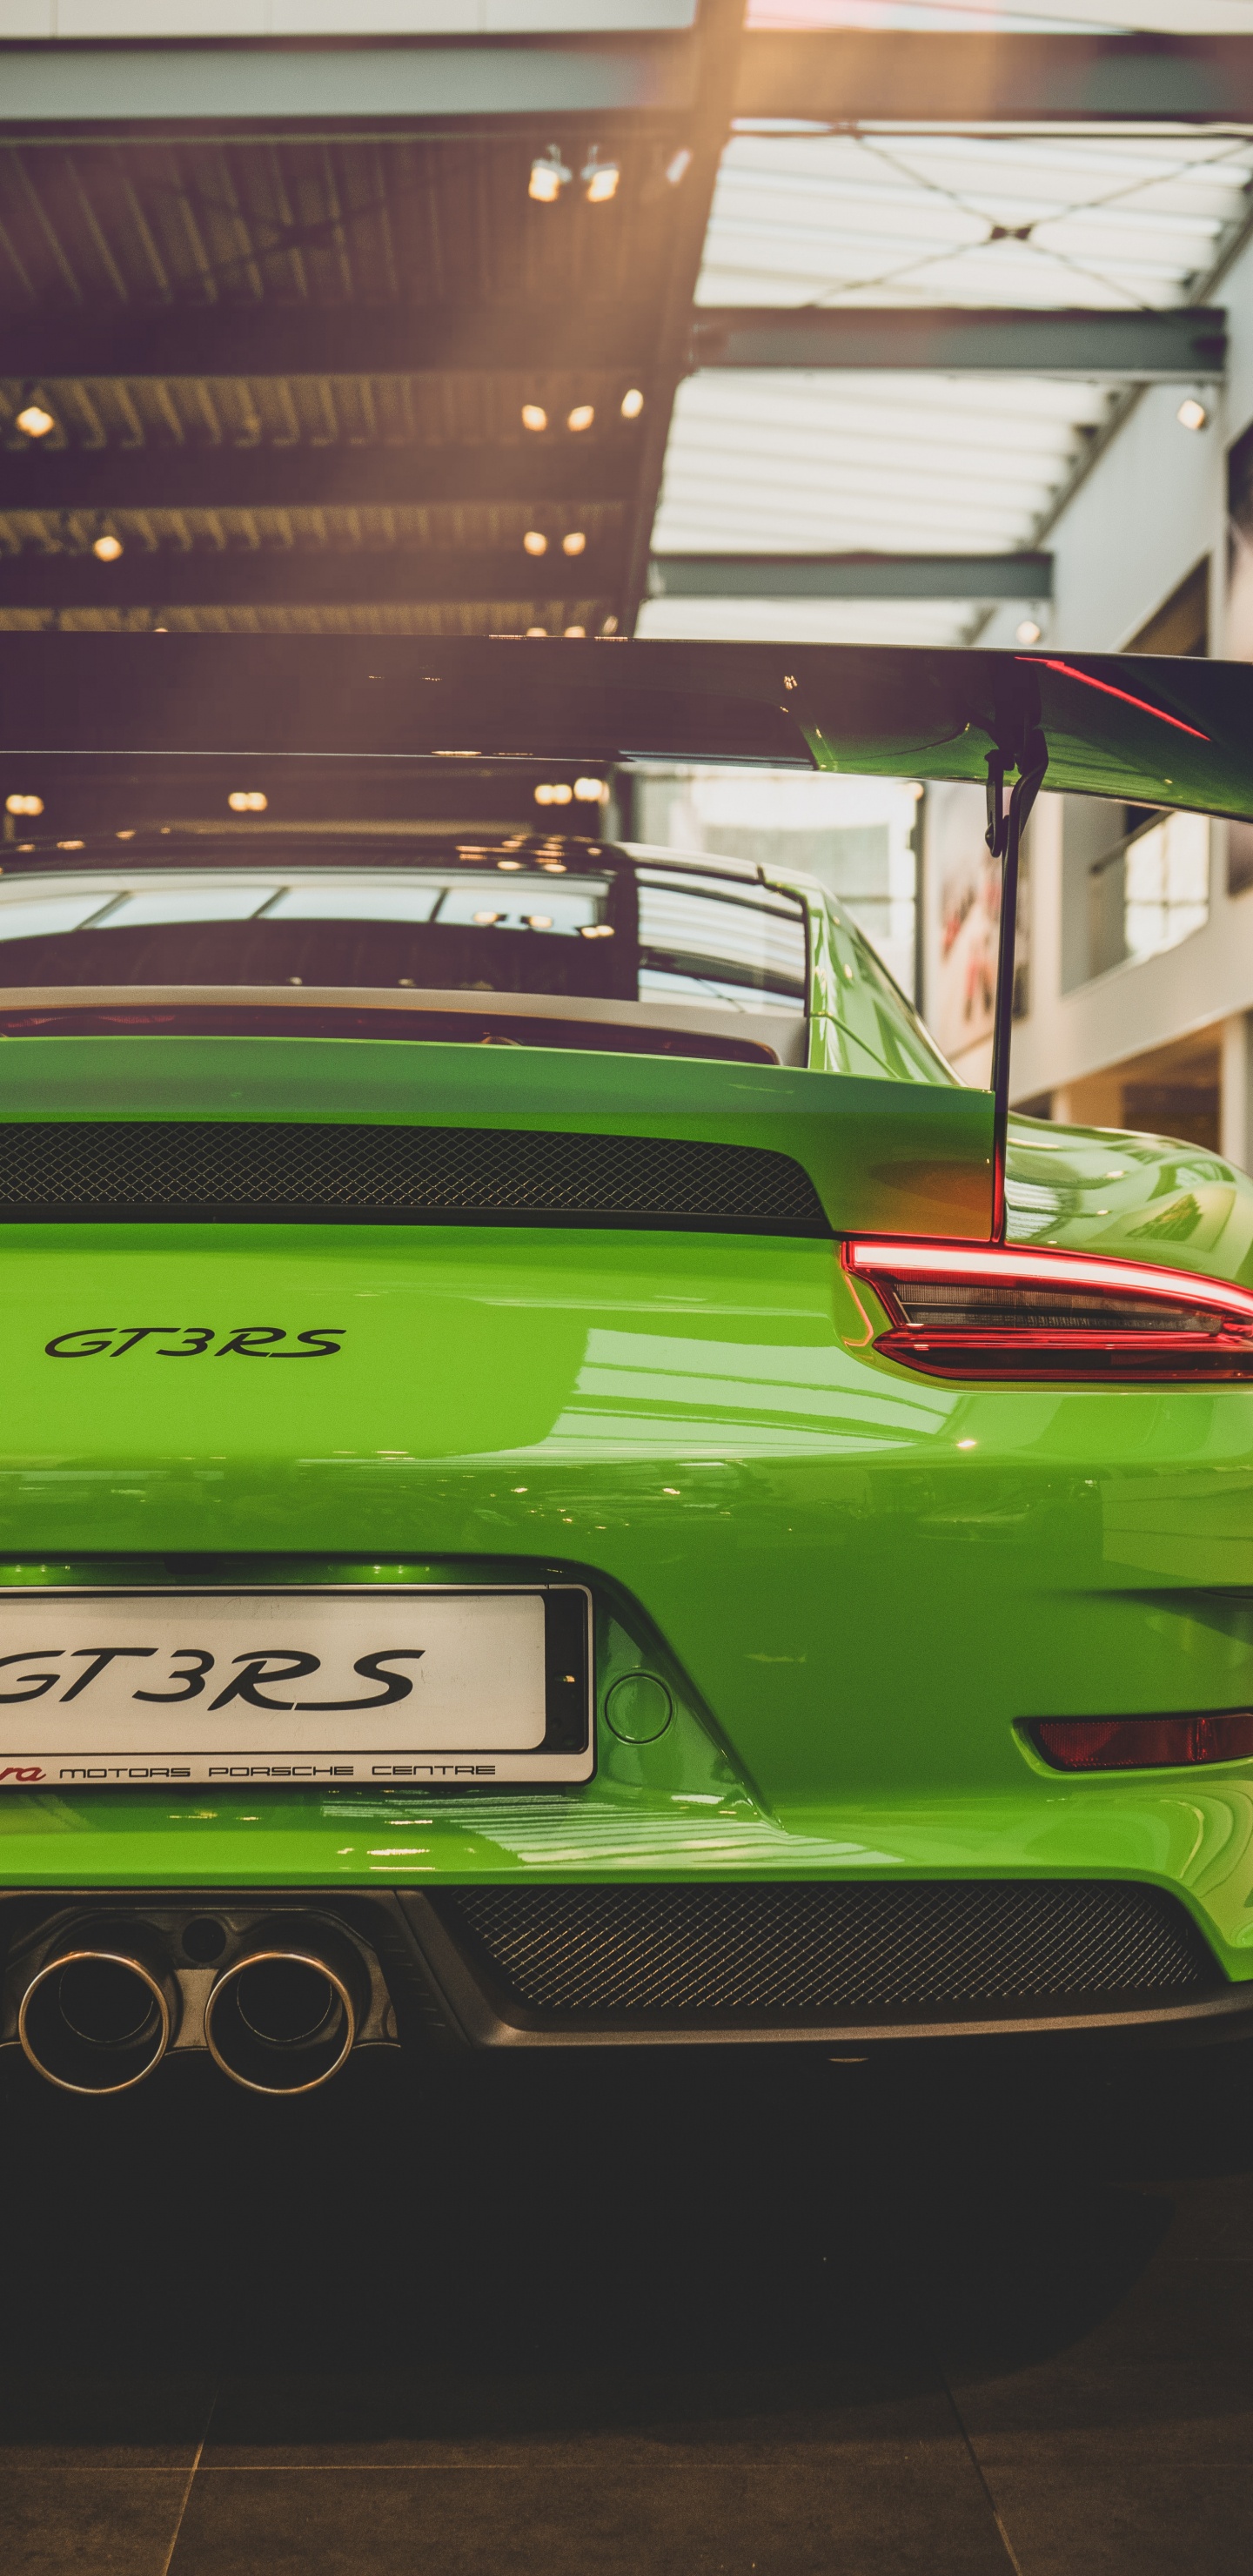 Porsche 911 Verde Estacionado Frente al Edificio. Wallpaper in 1440x2960 Resolution